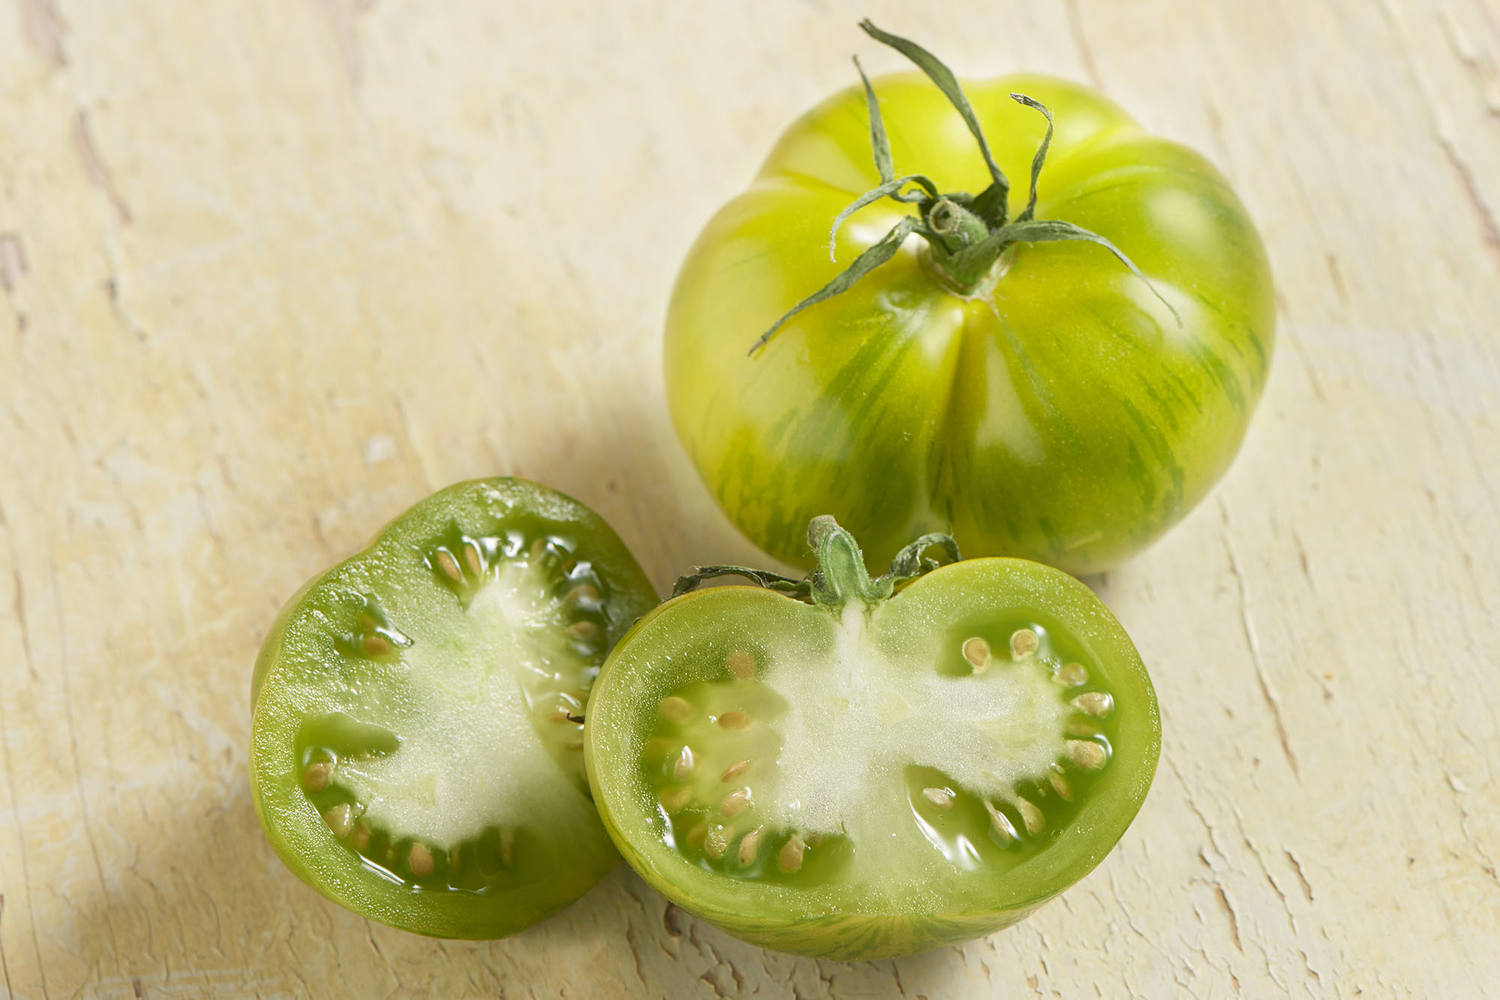 Tijger tomaten groen verpakt 500gr stuk 2